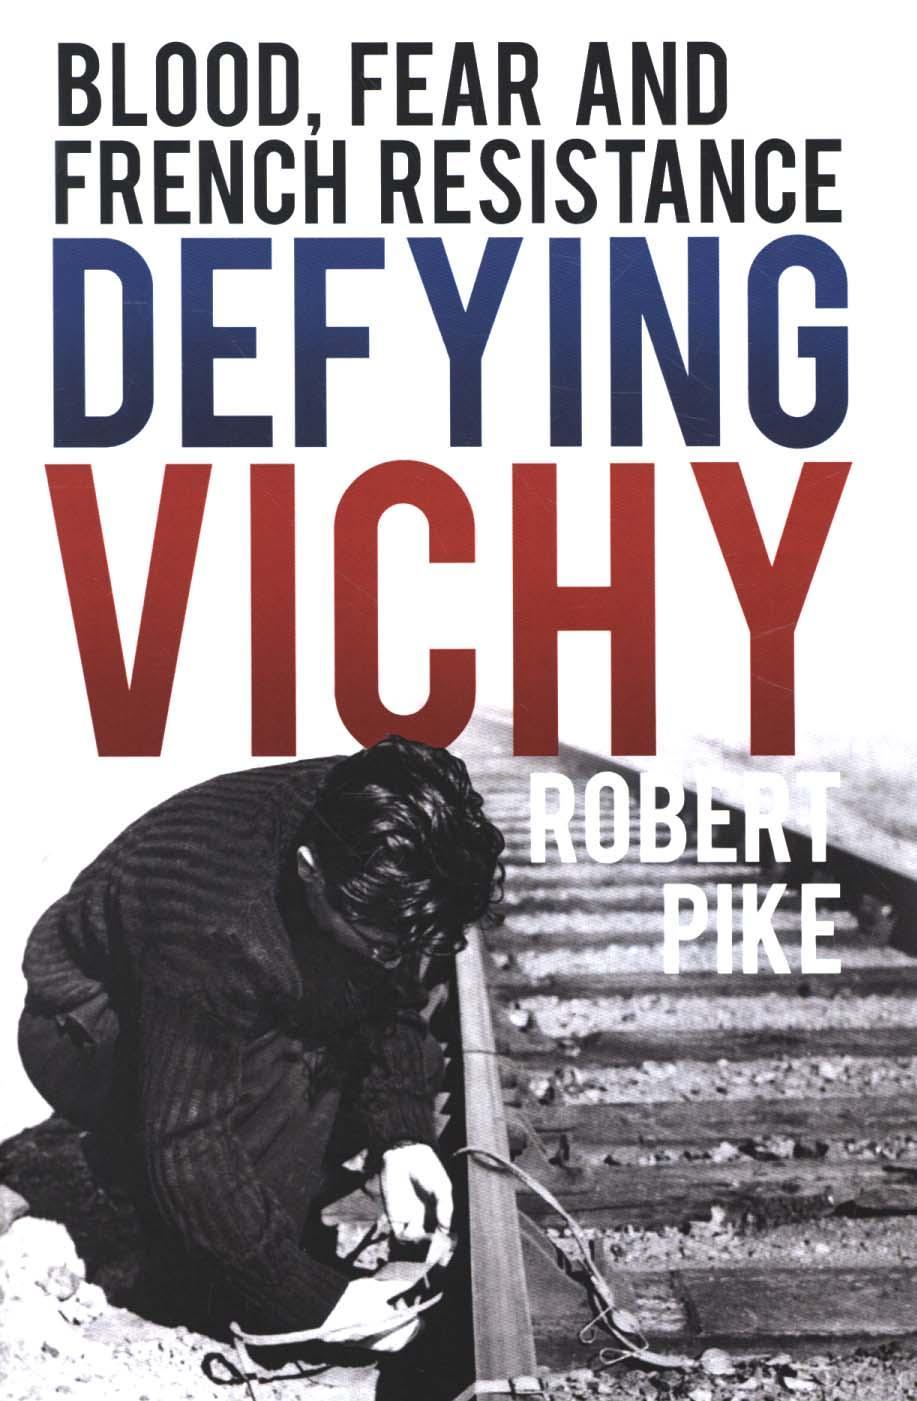 Defying Vichy